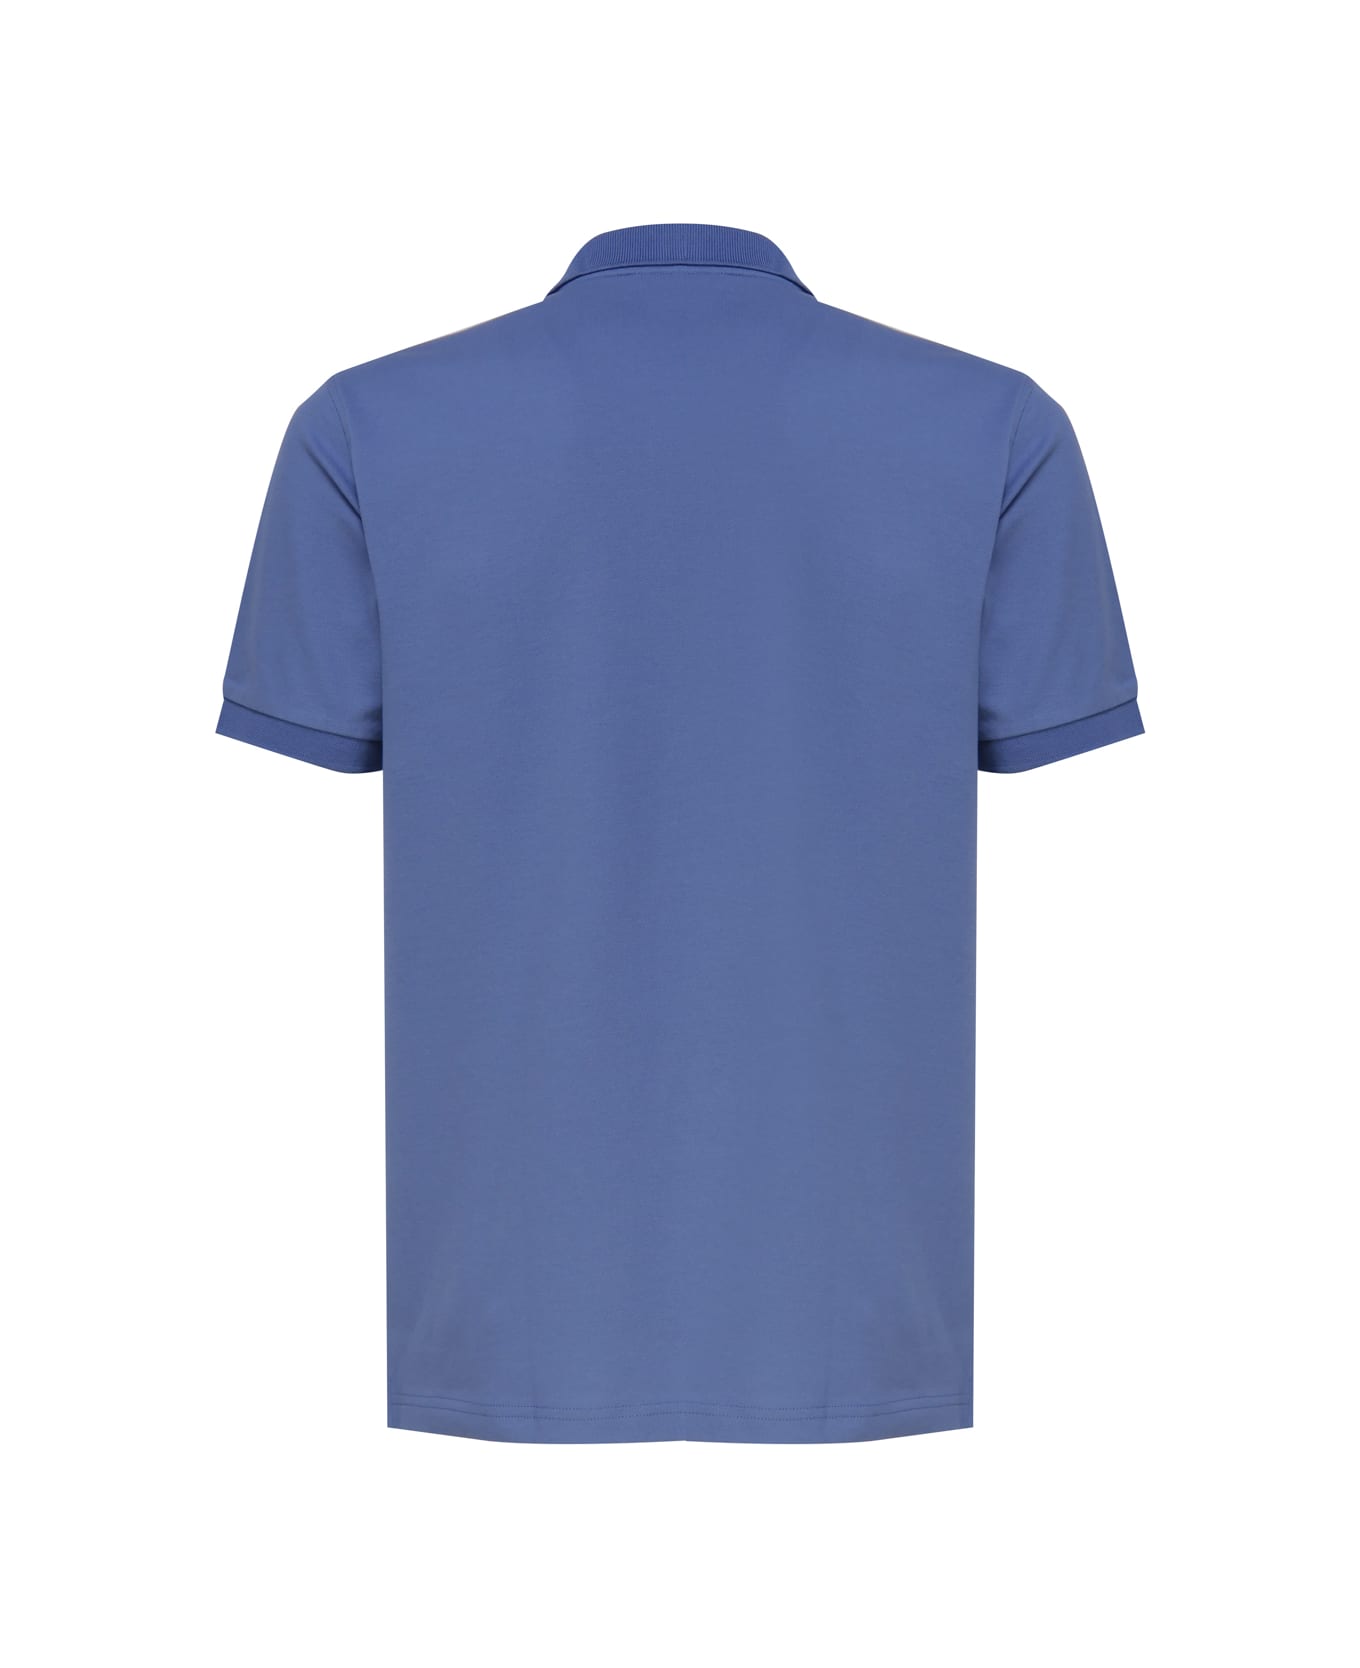 Sun 68 Polo T-shirt In Cotton - Avion Blue